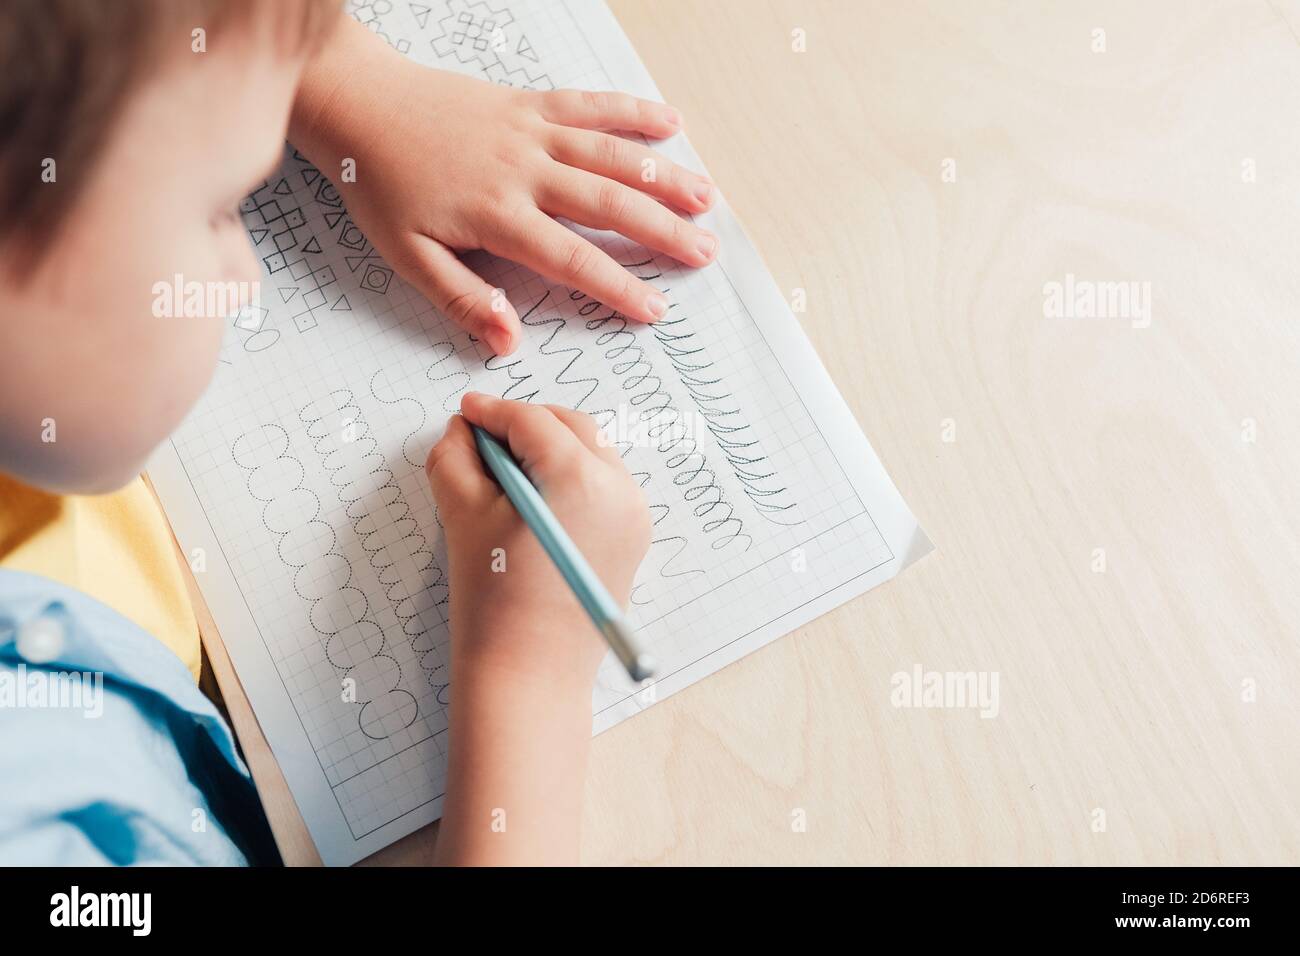 Nahaufnahme von niedlichen Jungen tun seine Hausaufgaben. Kind schreiben mit Bleistift. Vorschreiben Übung, um die Hände für das Schreiben von Briefen vorzubereiten. Konzept der Kindererziehung Stockfoto